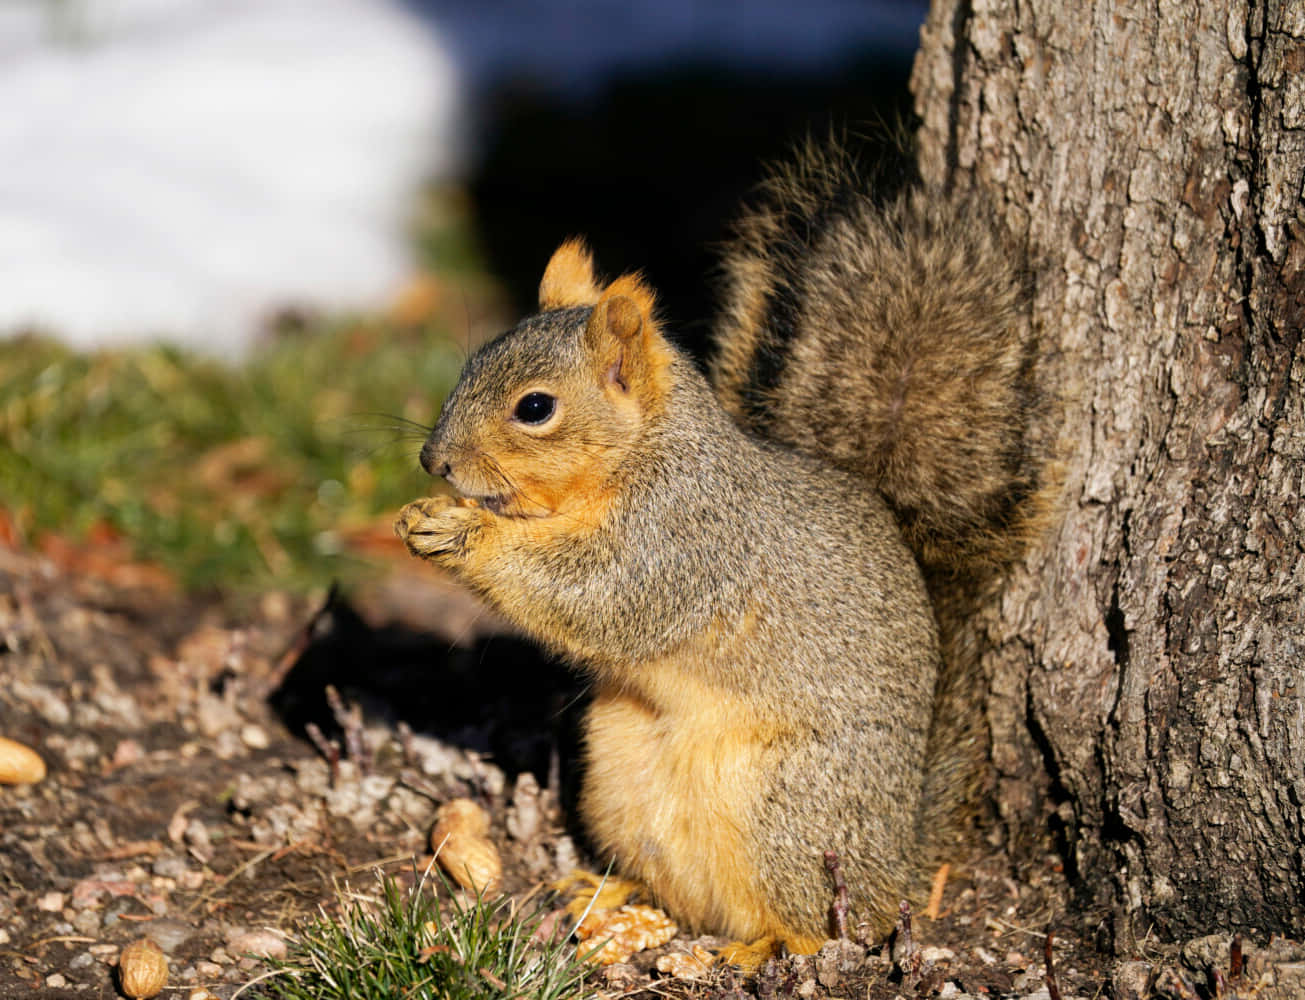 A playful squirrel enjoying its natural environment